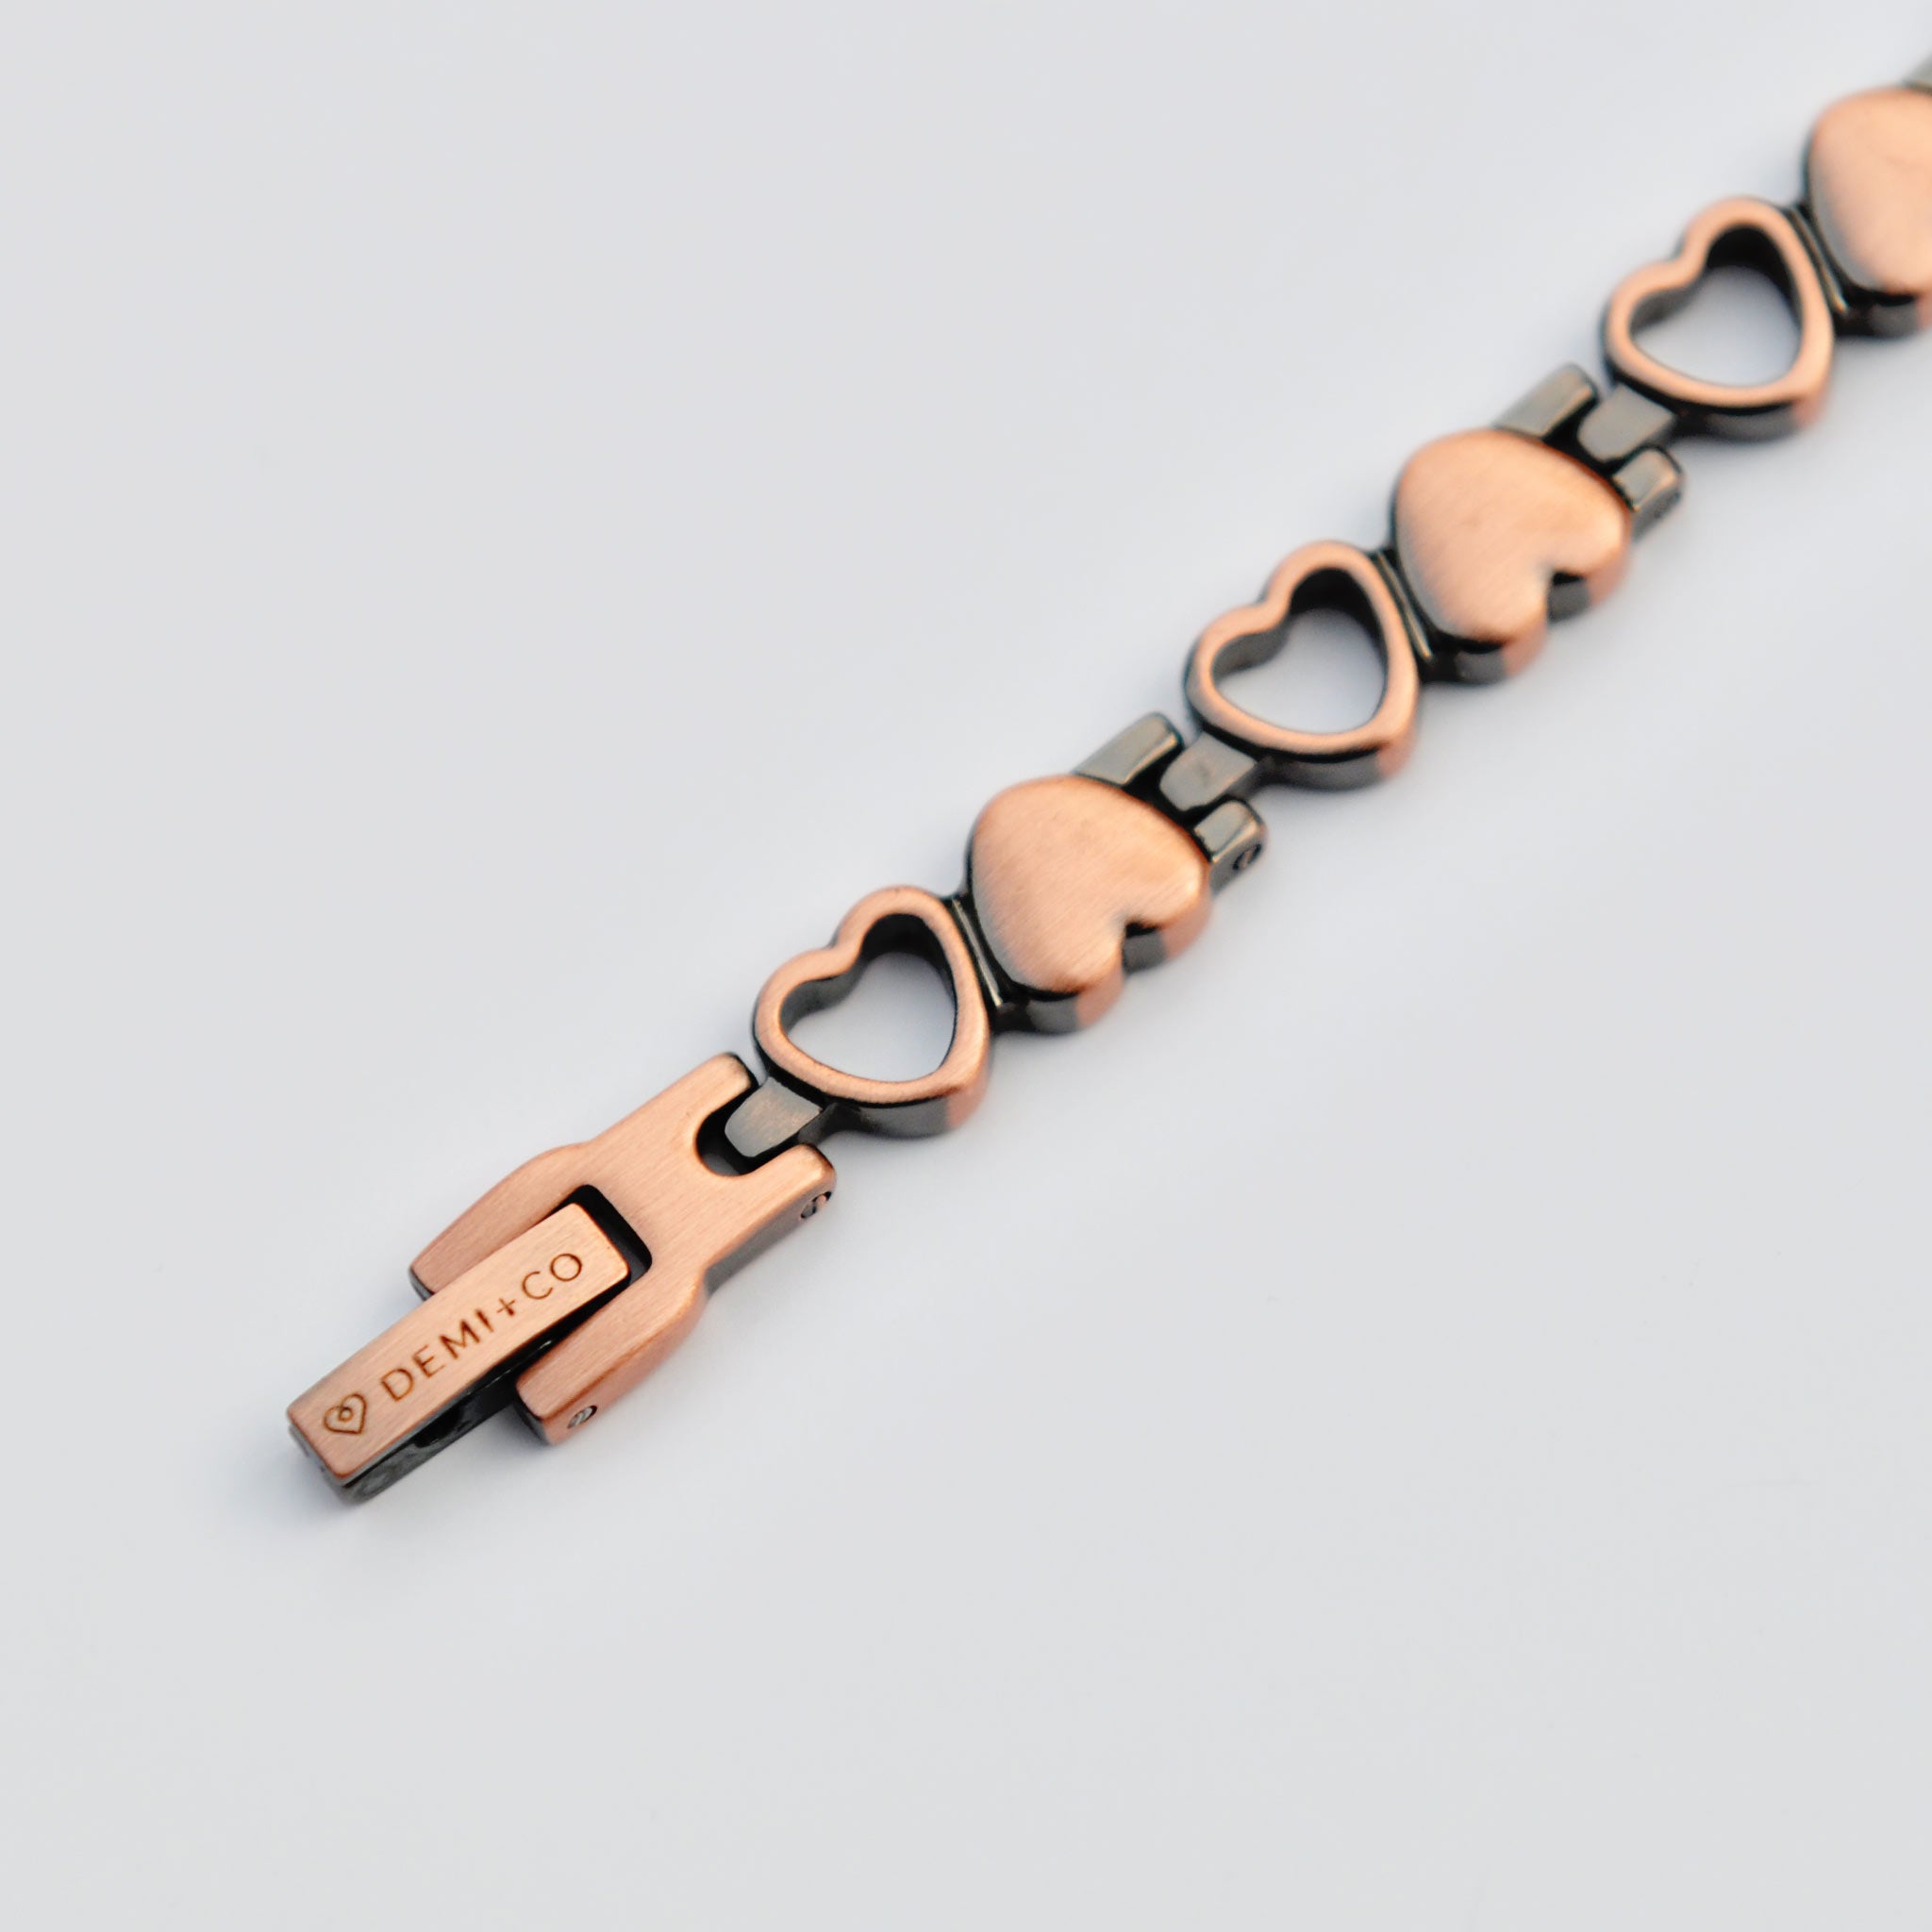 arthritis copper bracelet